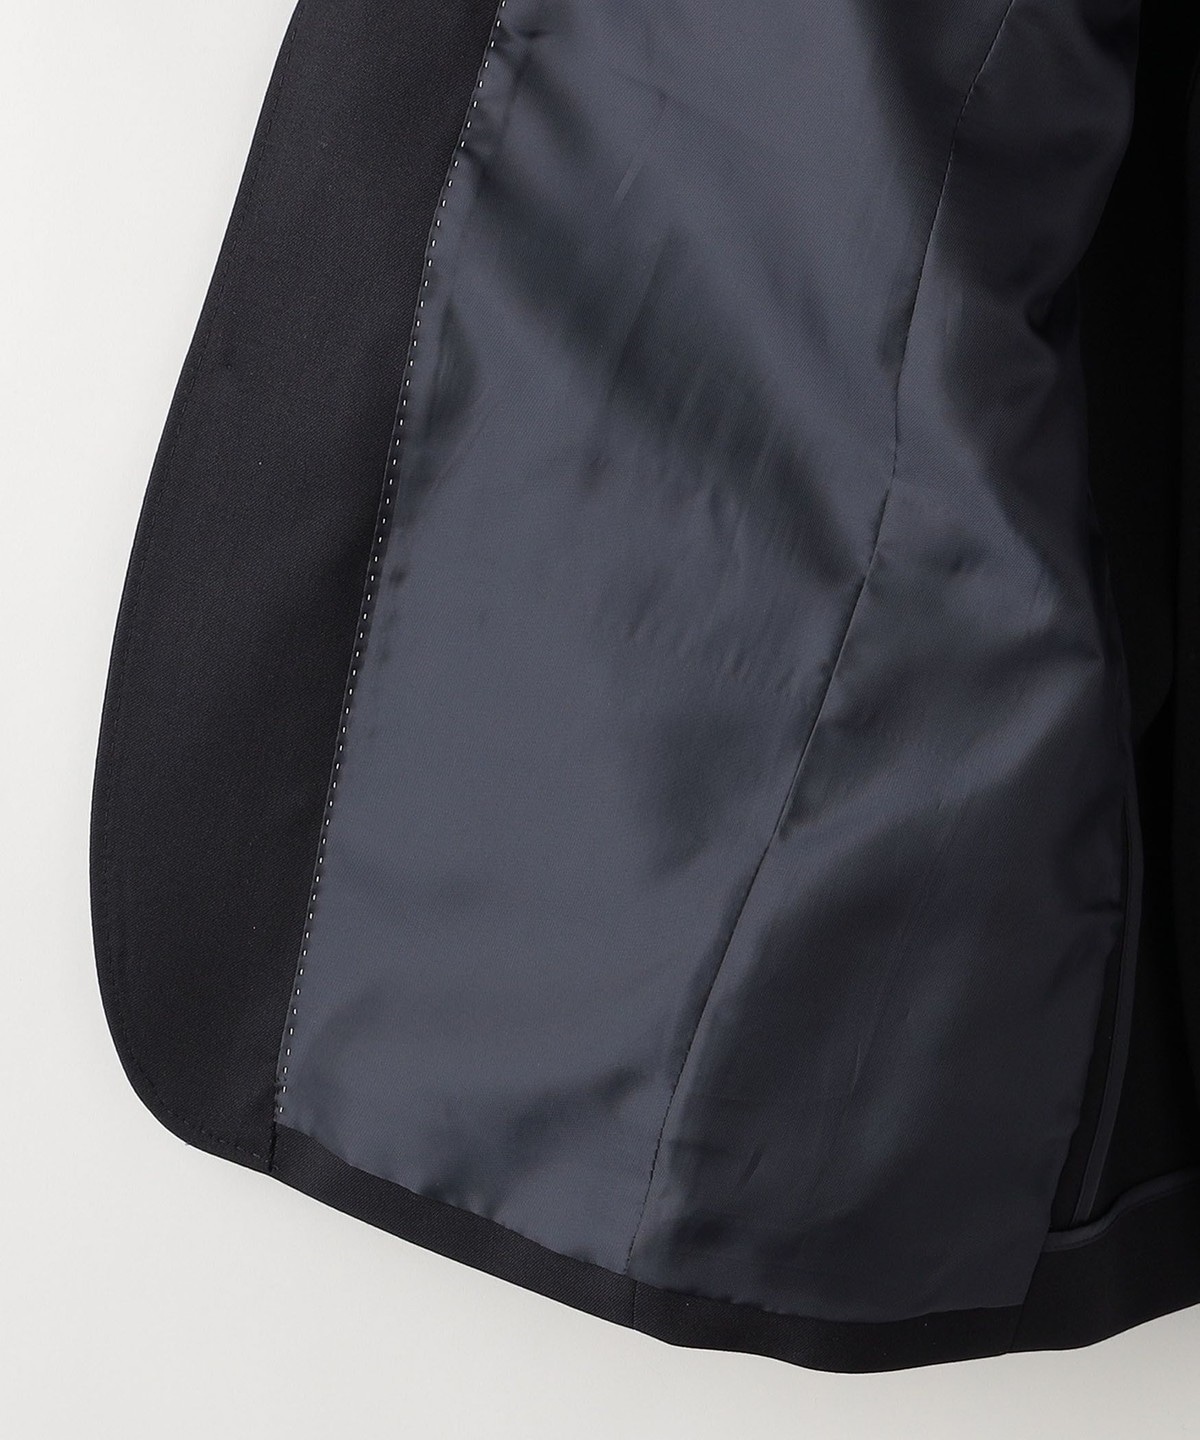 送料無料SALE】 スーツ ジャケット SHIPS KIDS:ウール メタル ボタン ジャケット 2(145〜160cm) ZOZOTOWN  PayPayモール店 通販 PayPayモール